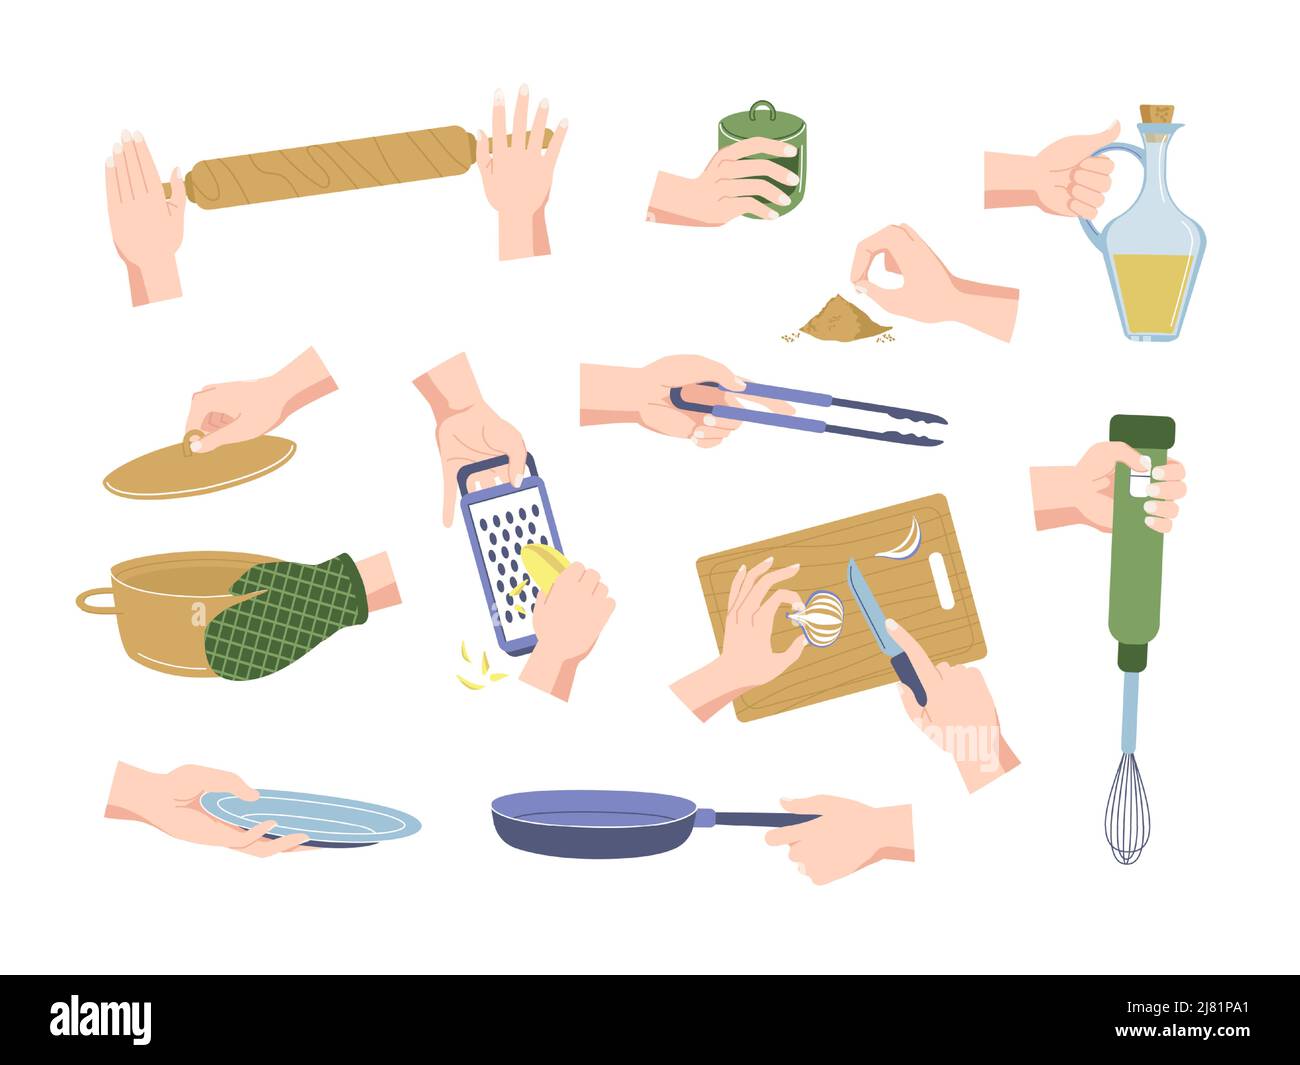 Hände Geschirr-Set. Weibliche Hände, die Utensilien und Küchenzubehör halten, kochen und Küchengegenstände verwenden. Vektor-isolierter Satz Stock Vektor